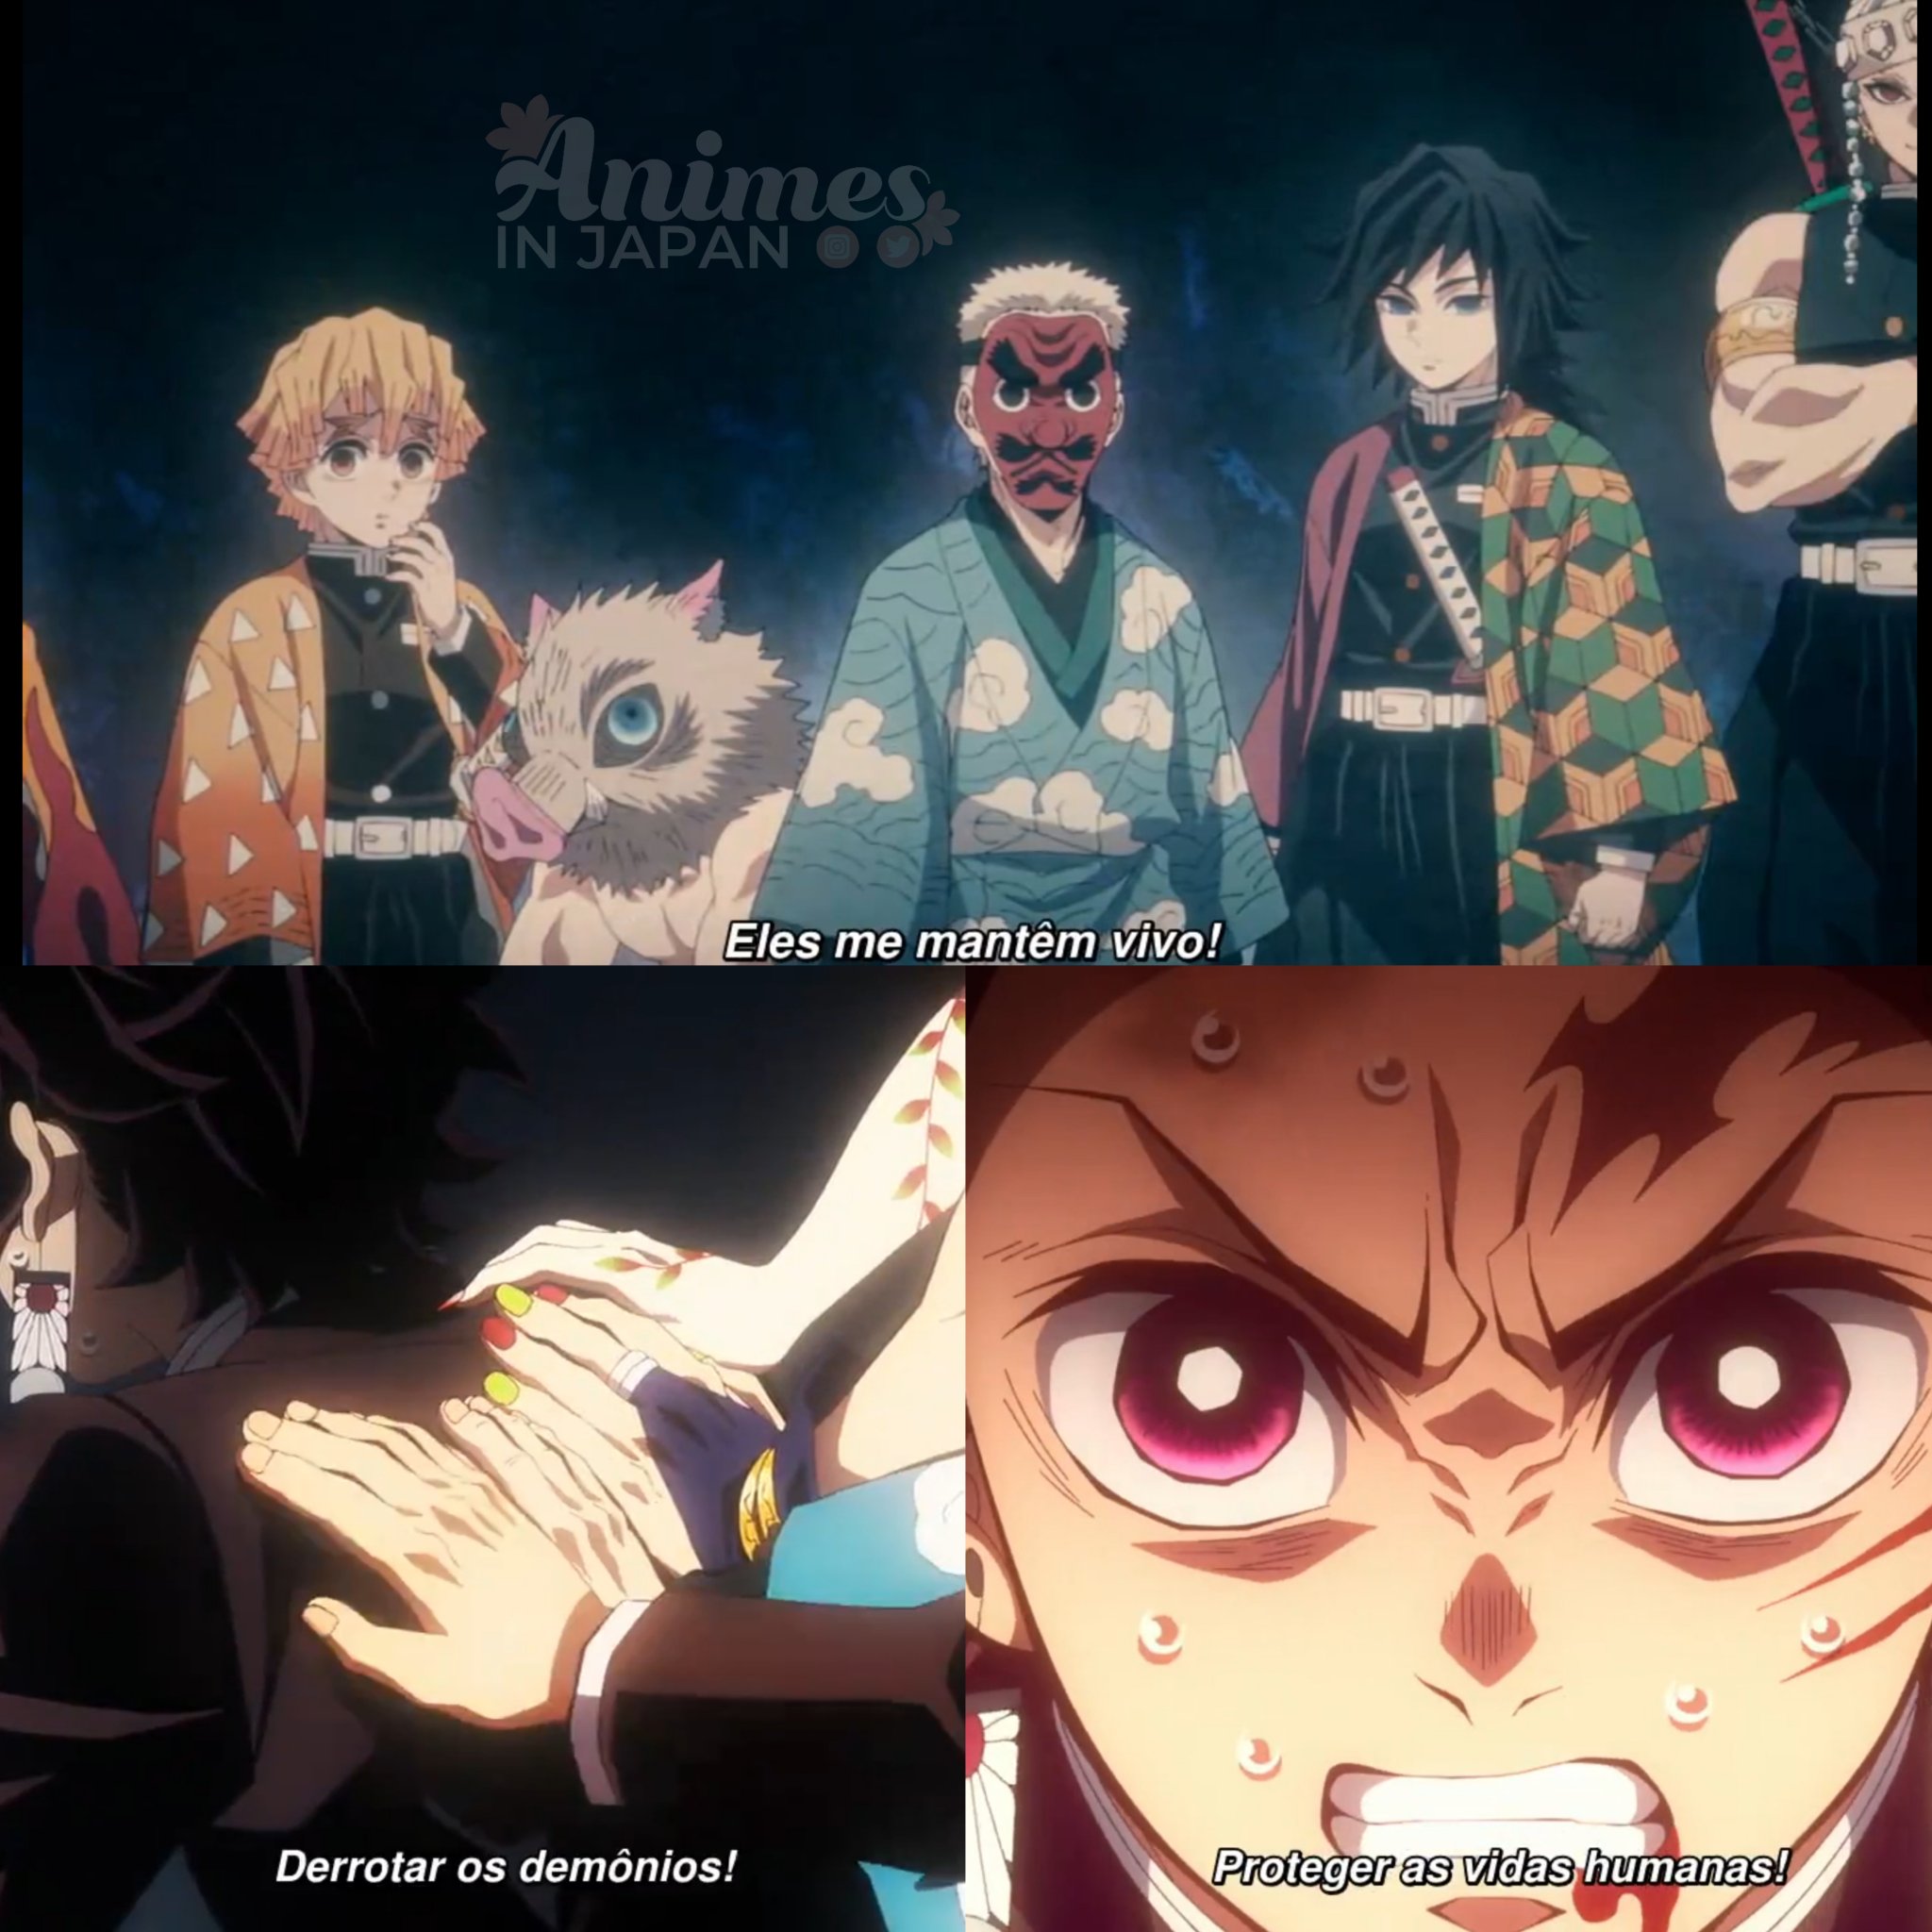 Animes In Japan 🎄 on X: RECEBA! 🤣 Anime: Demon Slayer: Kimetsu no Yaiba:  Katanakaji no sato-hen. #PrimaveraNaAIJ 🌸 #鬼滅の刃  /  X